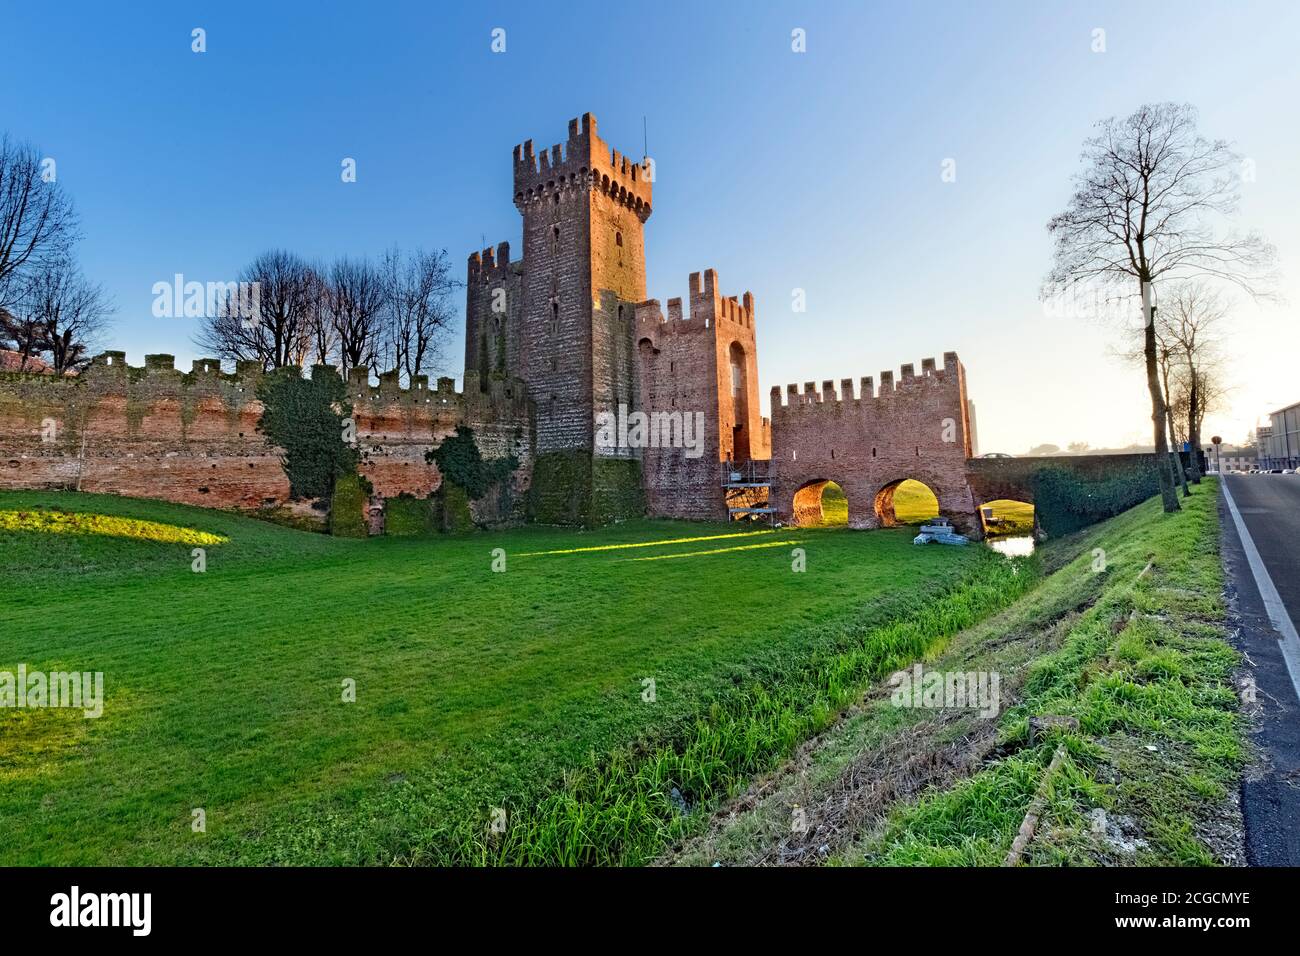 Tramonto sulla città medievale fortificata di Montagnana. Provincia di Padova, Veneto, Italia, Europa. Foto Stock